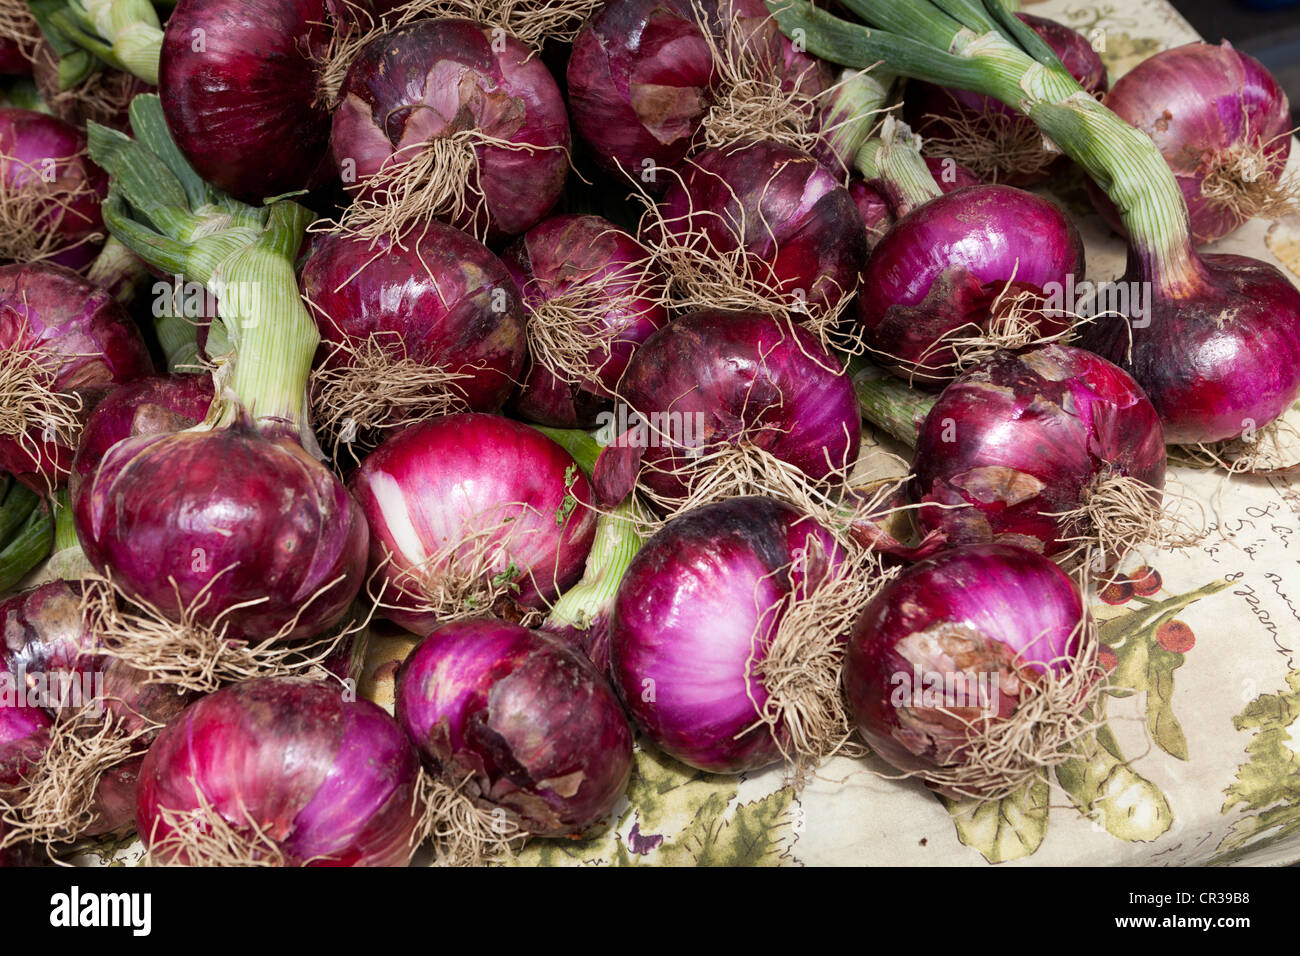 Oignons rouges avec tige à marché agricole local - Stockton, California USA Banque D'Images